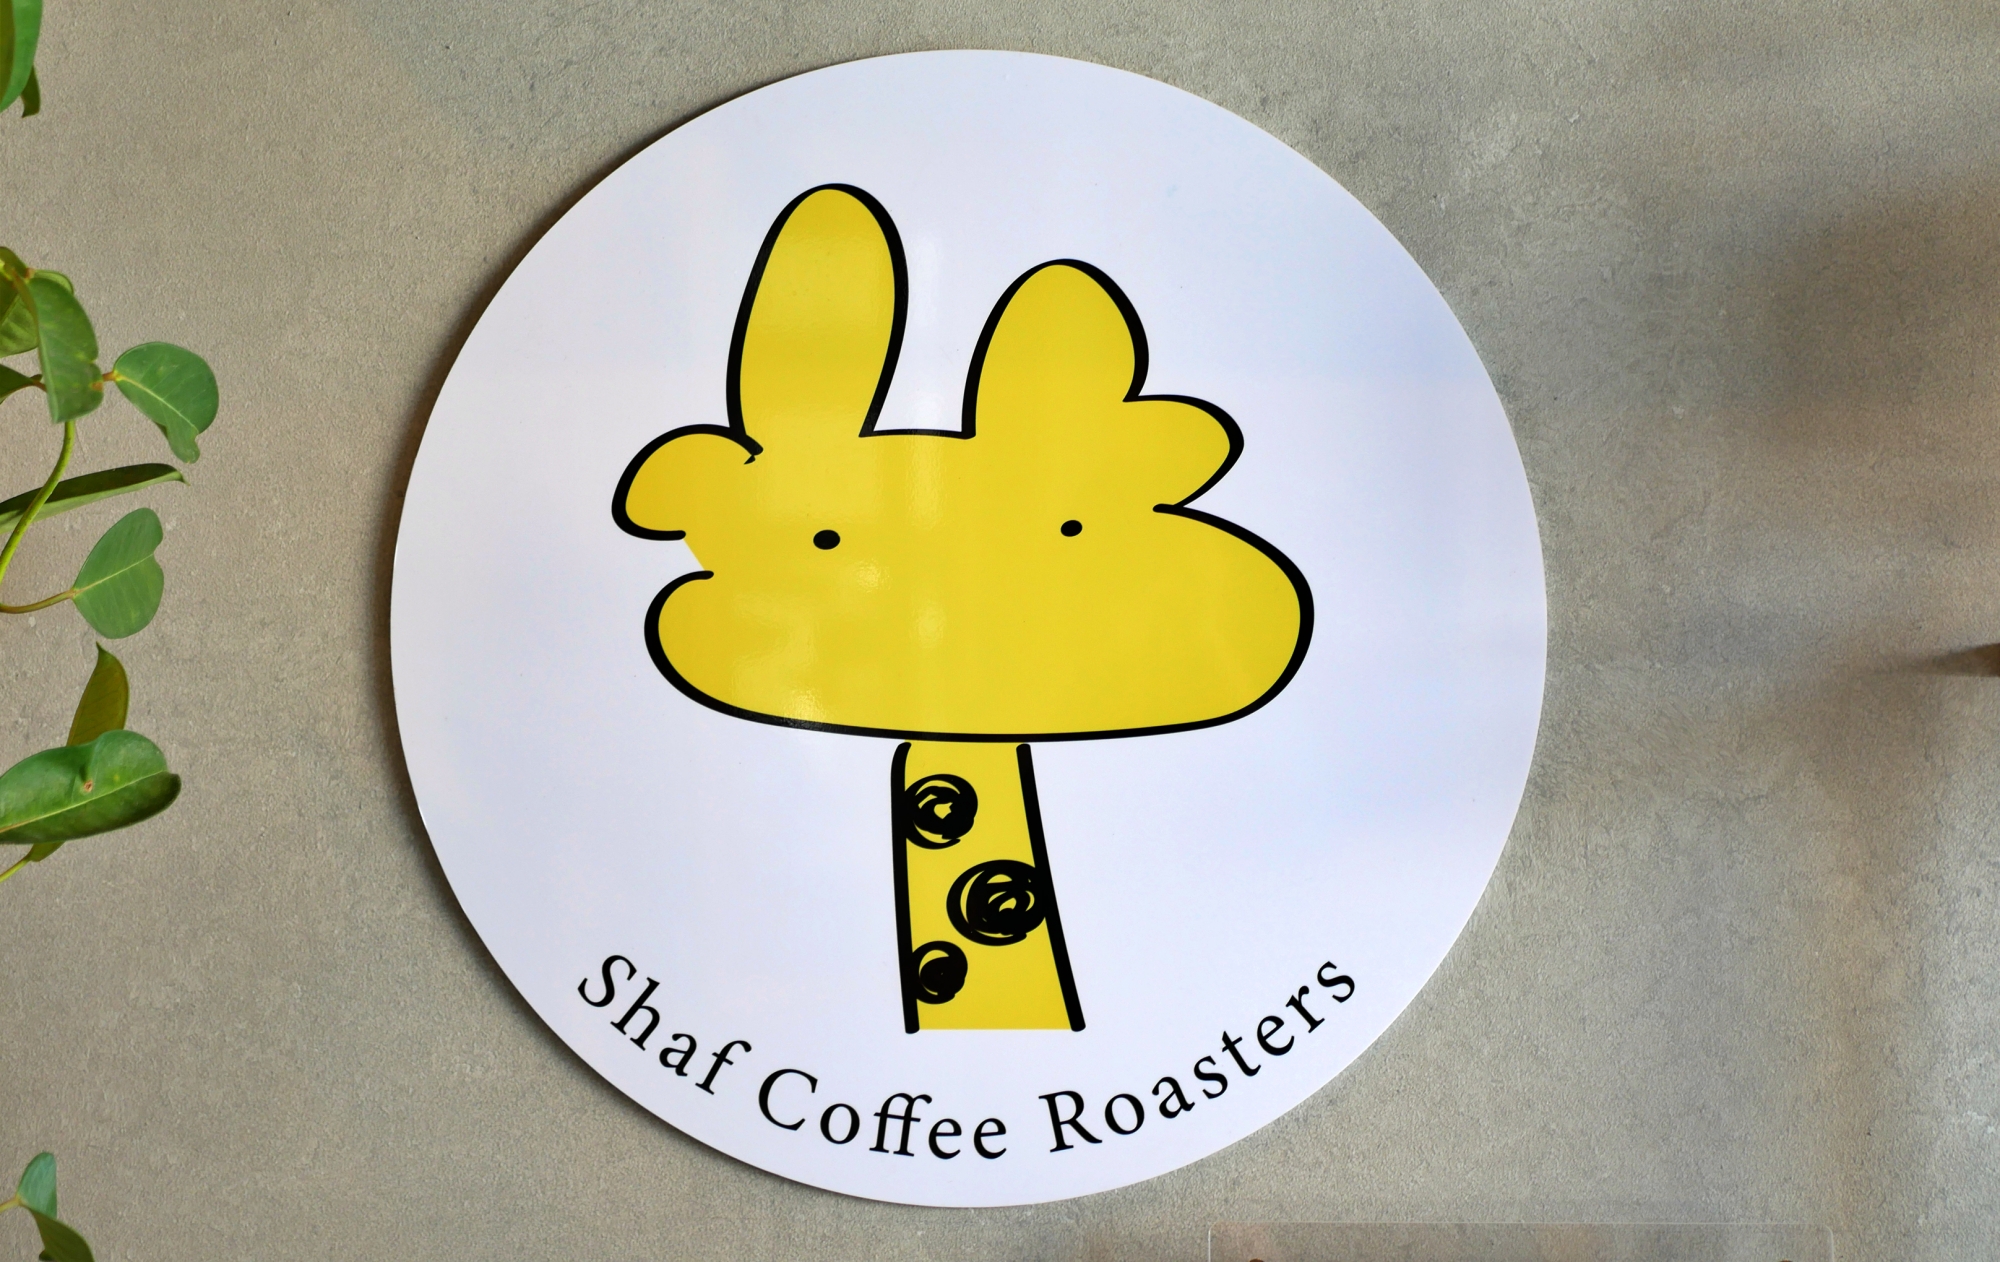 &quot;Shaf Coffee Roasters&quot; - Nép mình trong góc phía đông Okazaki, gian hàng cà phê xinh xắn với hình tượng hươu cao cổ.